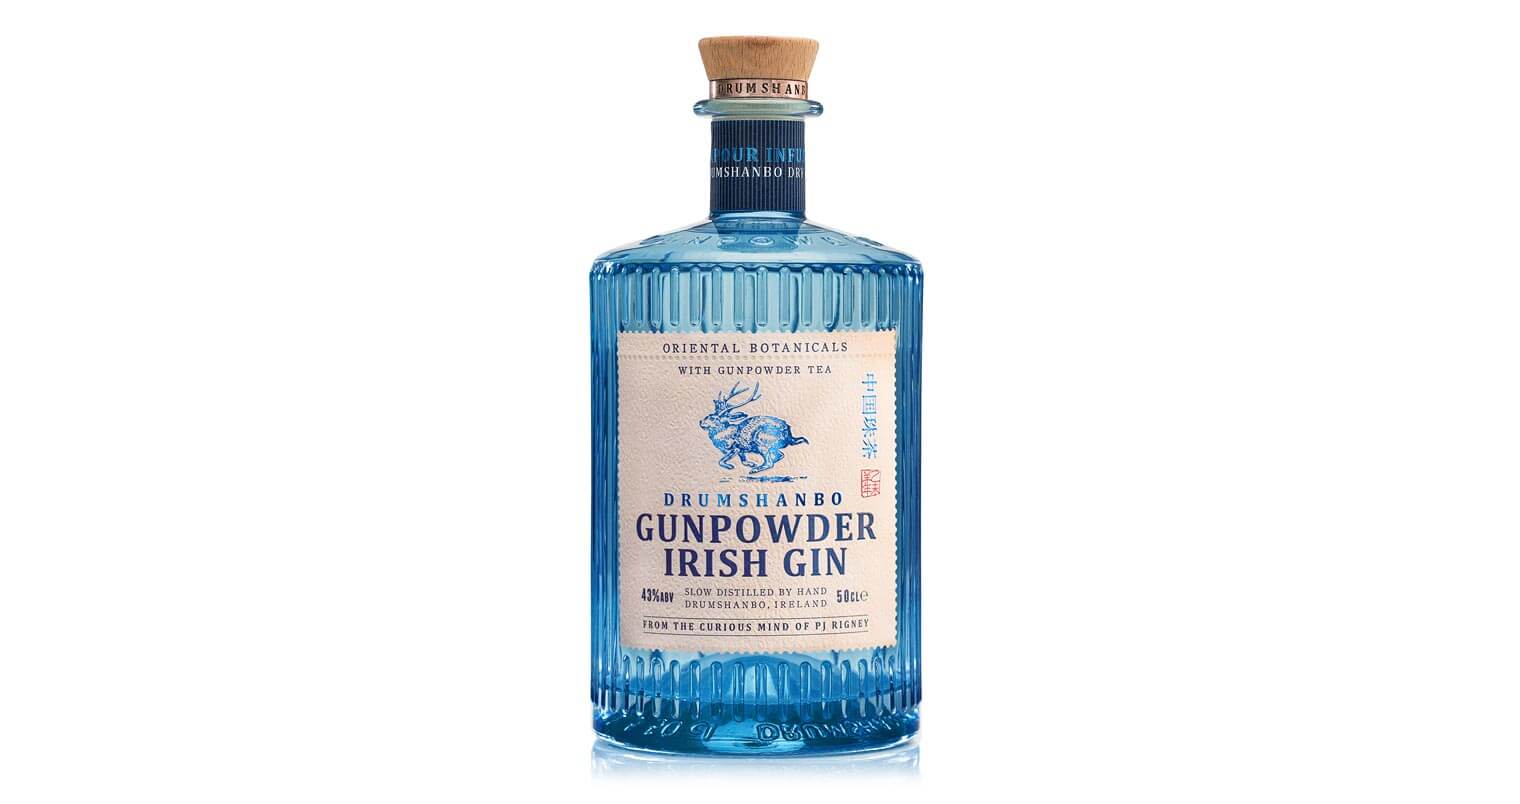 Drumshanbo Gunpowder Irish Gin Joins Palm Bay International Portfolio, featured image